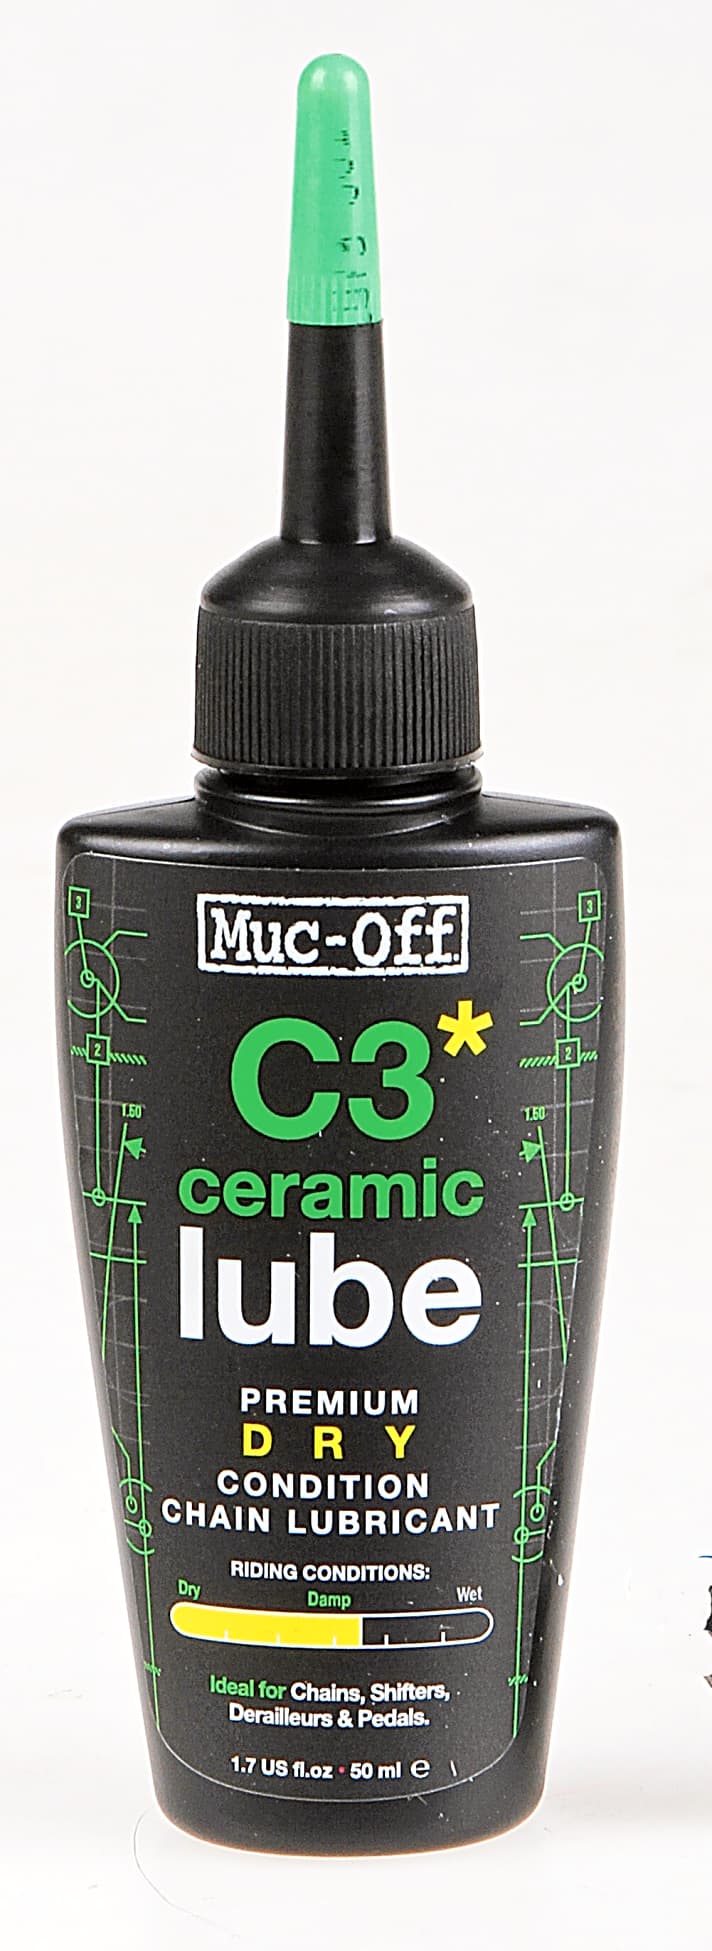   Muc-Off C3 Ceramic Lube